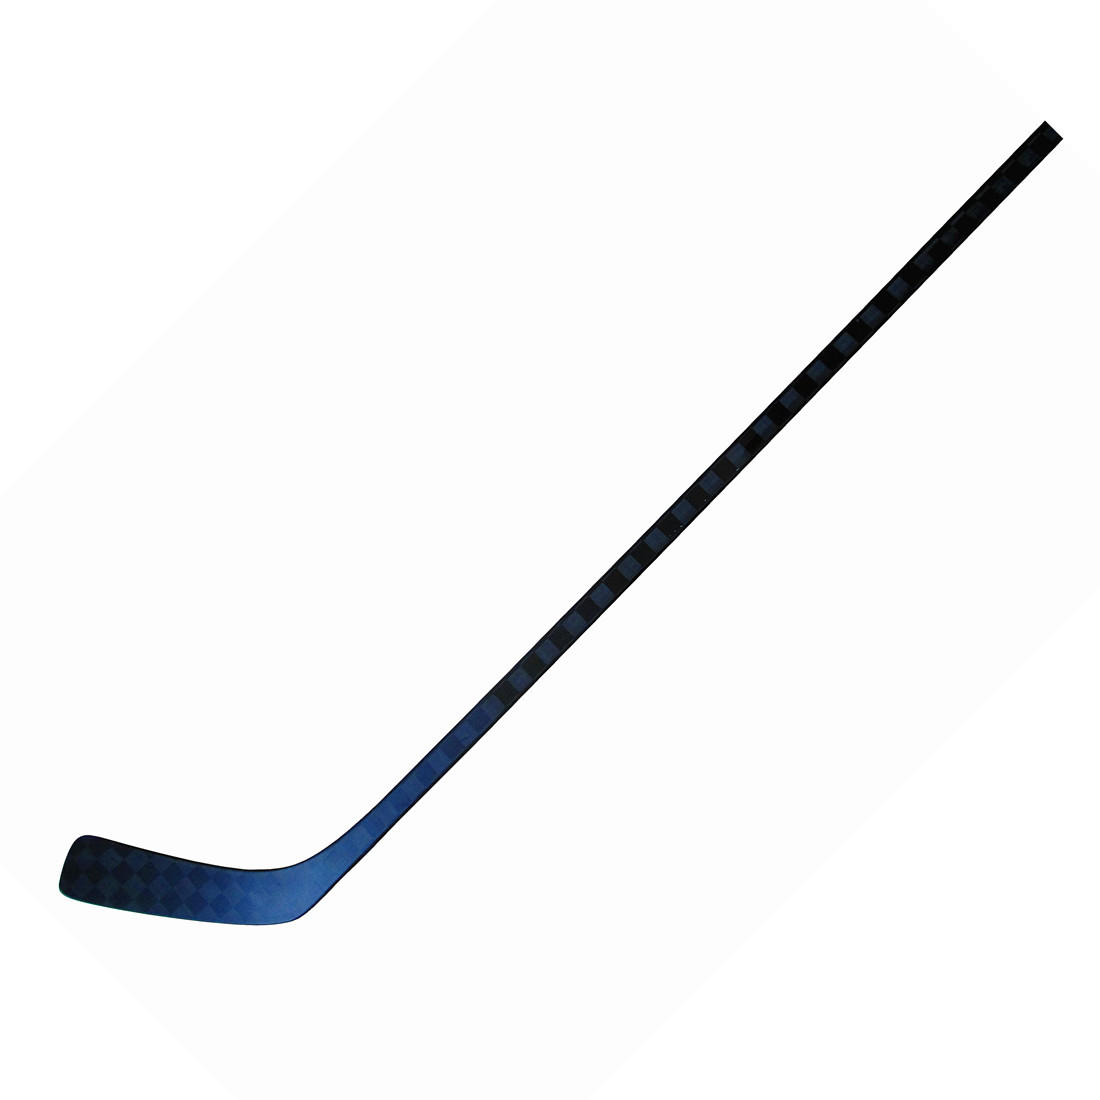 Hokey stick--Hockey stick